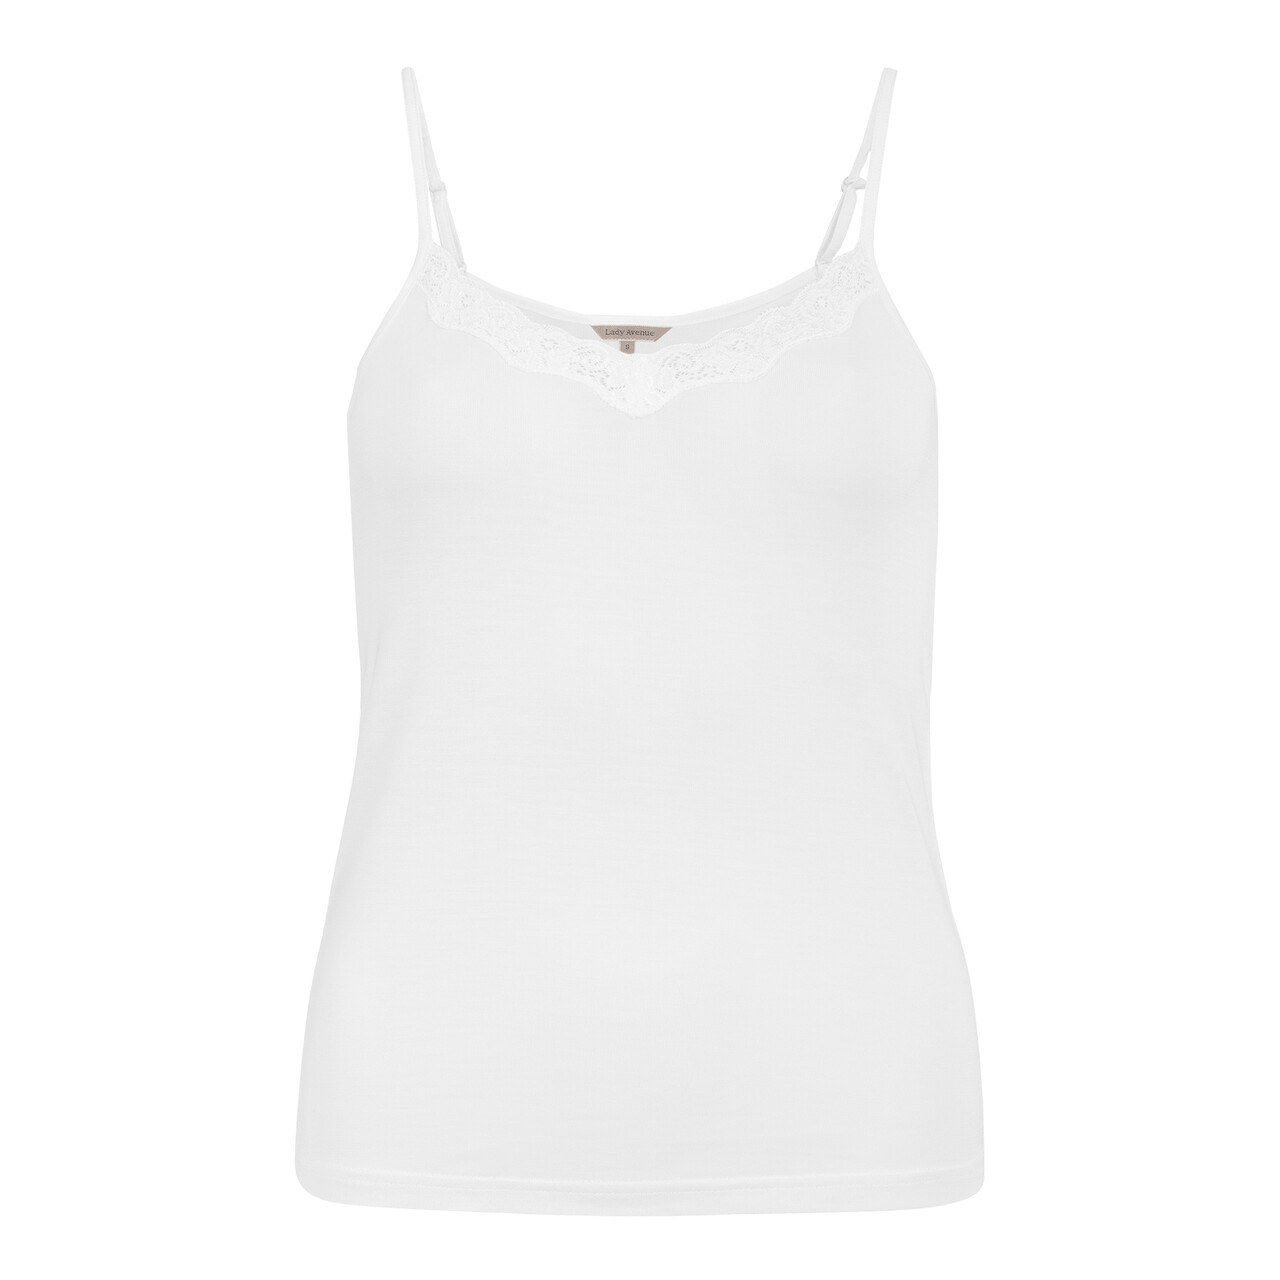 Se Lady Avenue Silk Jersey Camisole Top, Farve: Hvid, Størrelse: L, Dame hos Netlingeri.dk